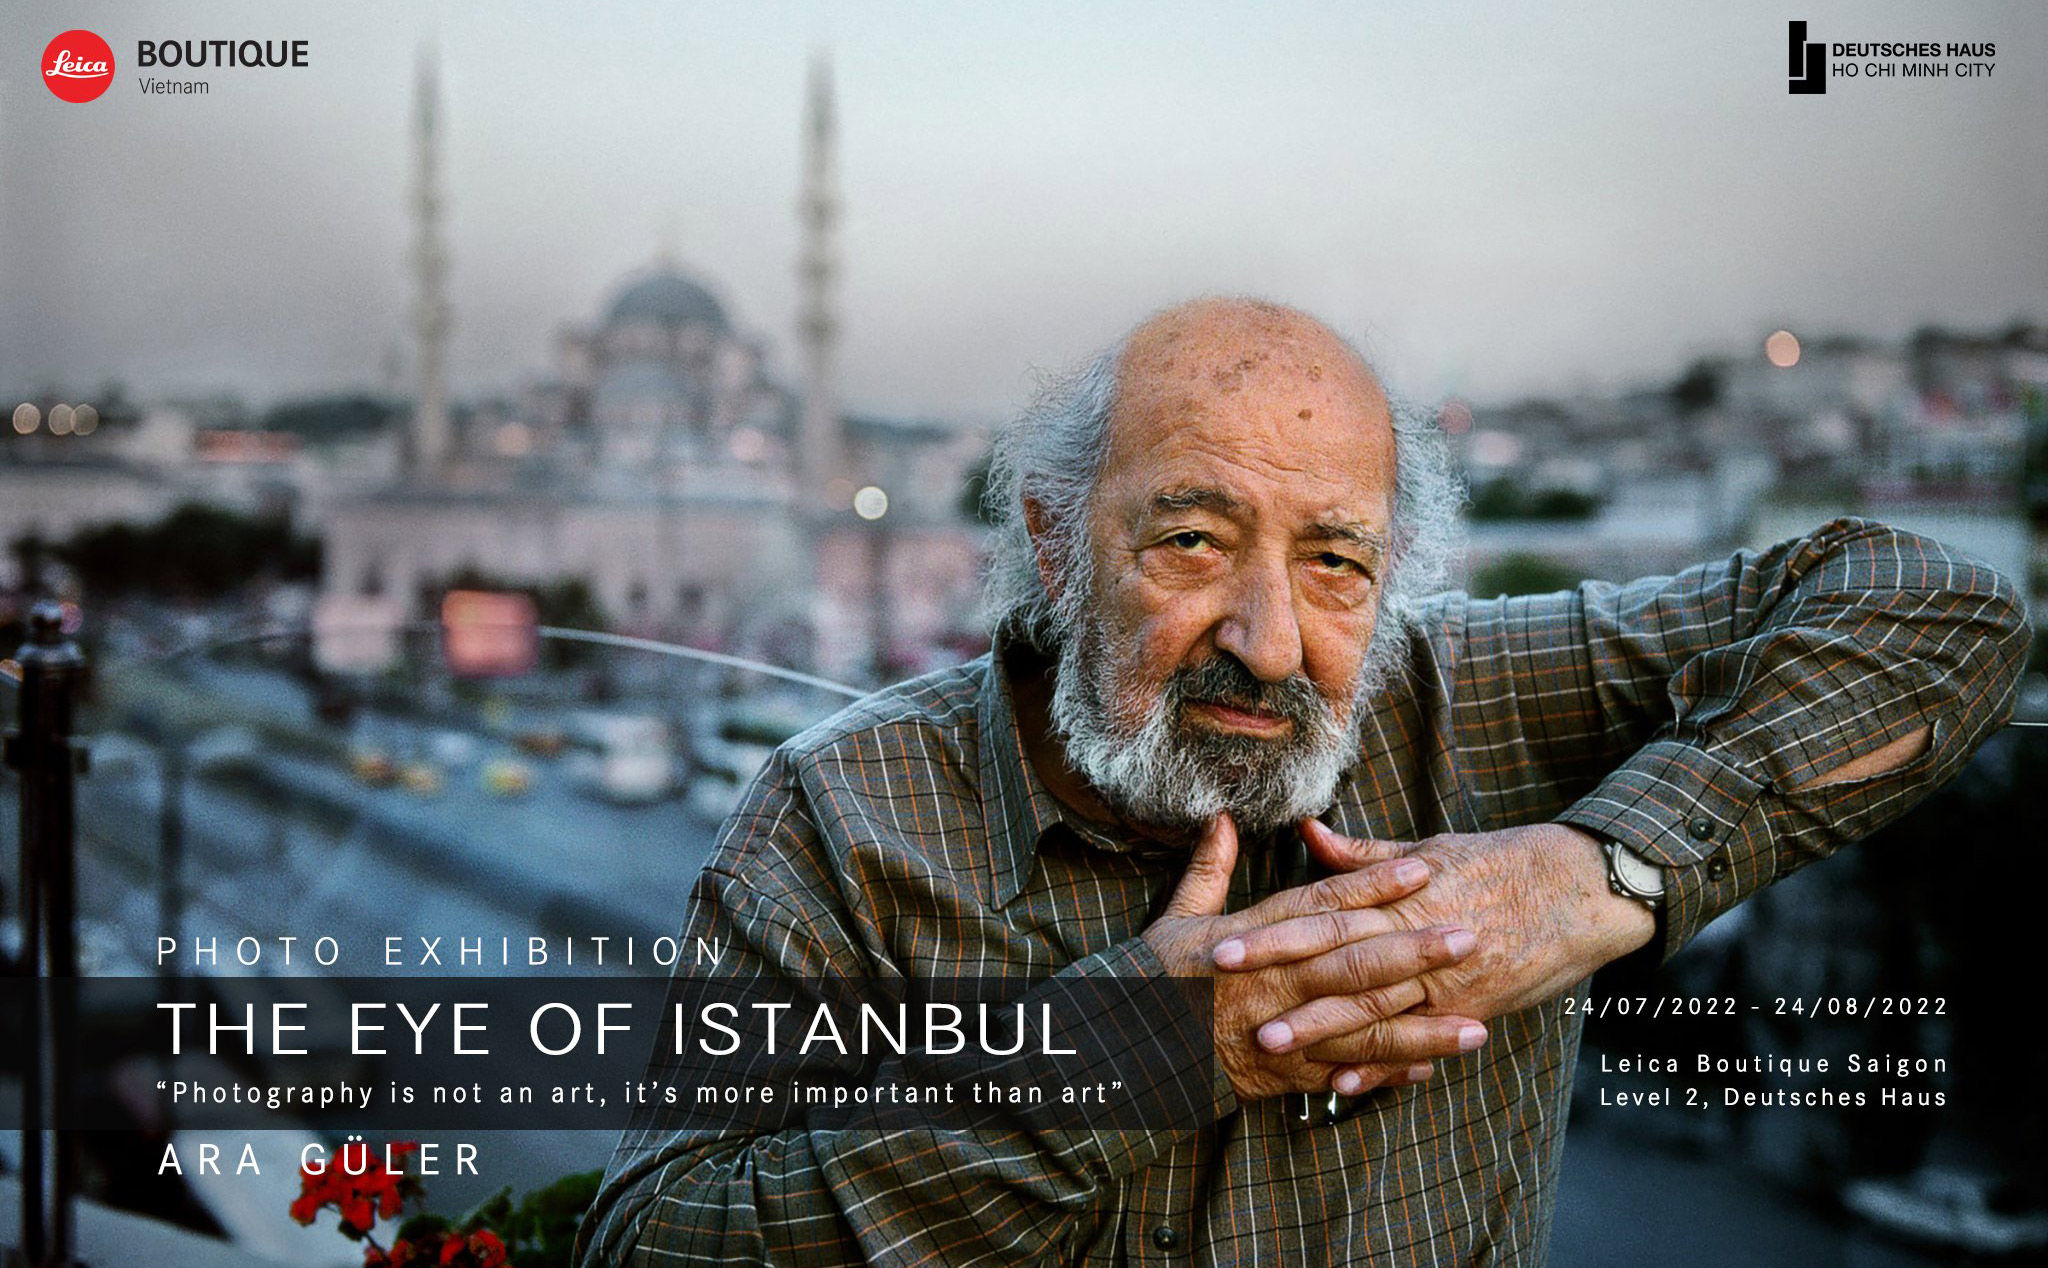 Mời tham gia triển lãm ảnh THE EYE OF ISTANBUL by Ara Güler - Leica Hall of Fame tại TPHCM